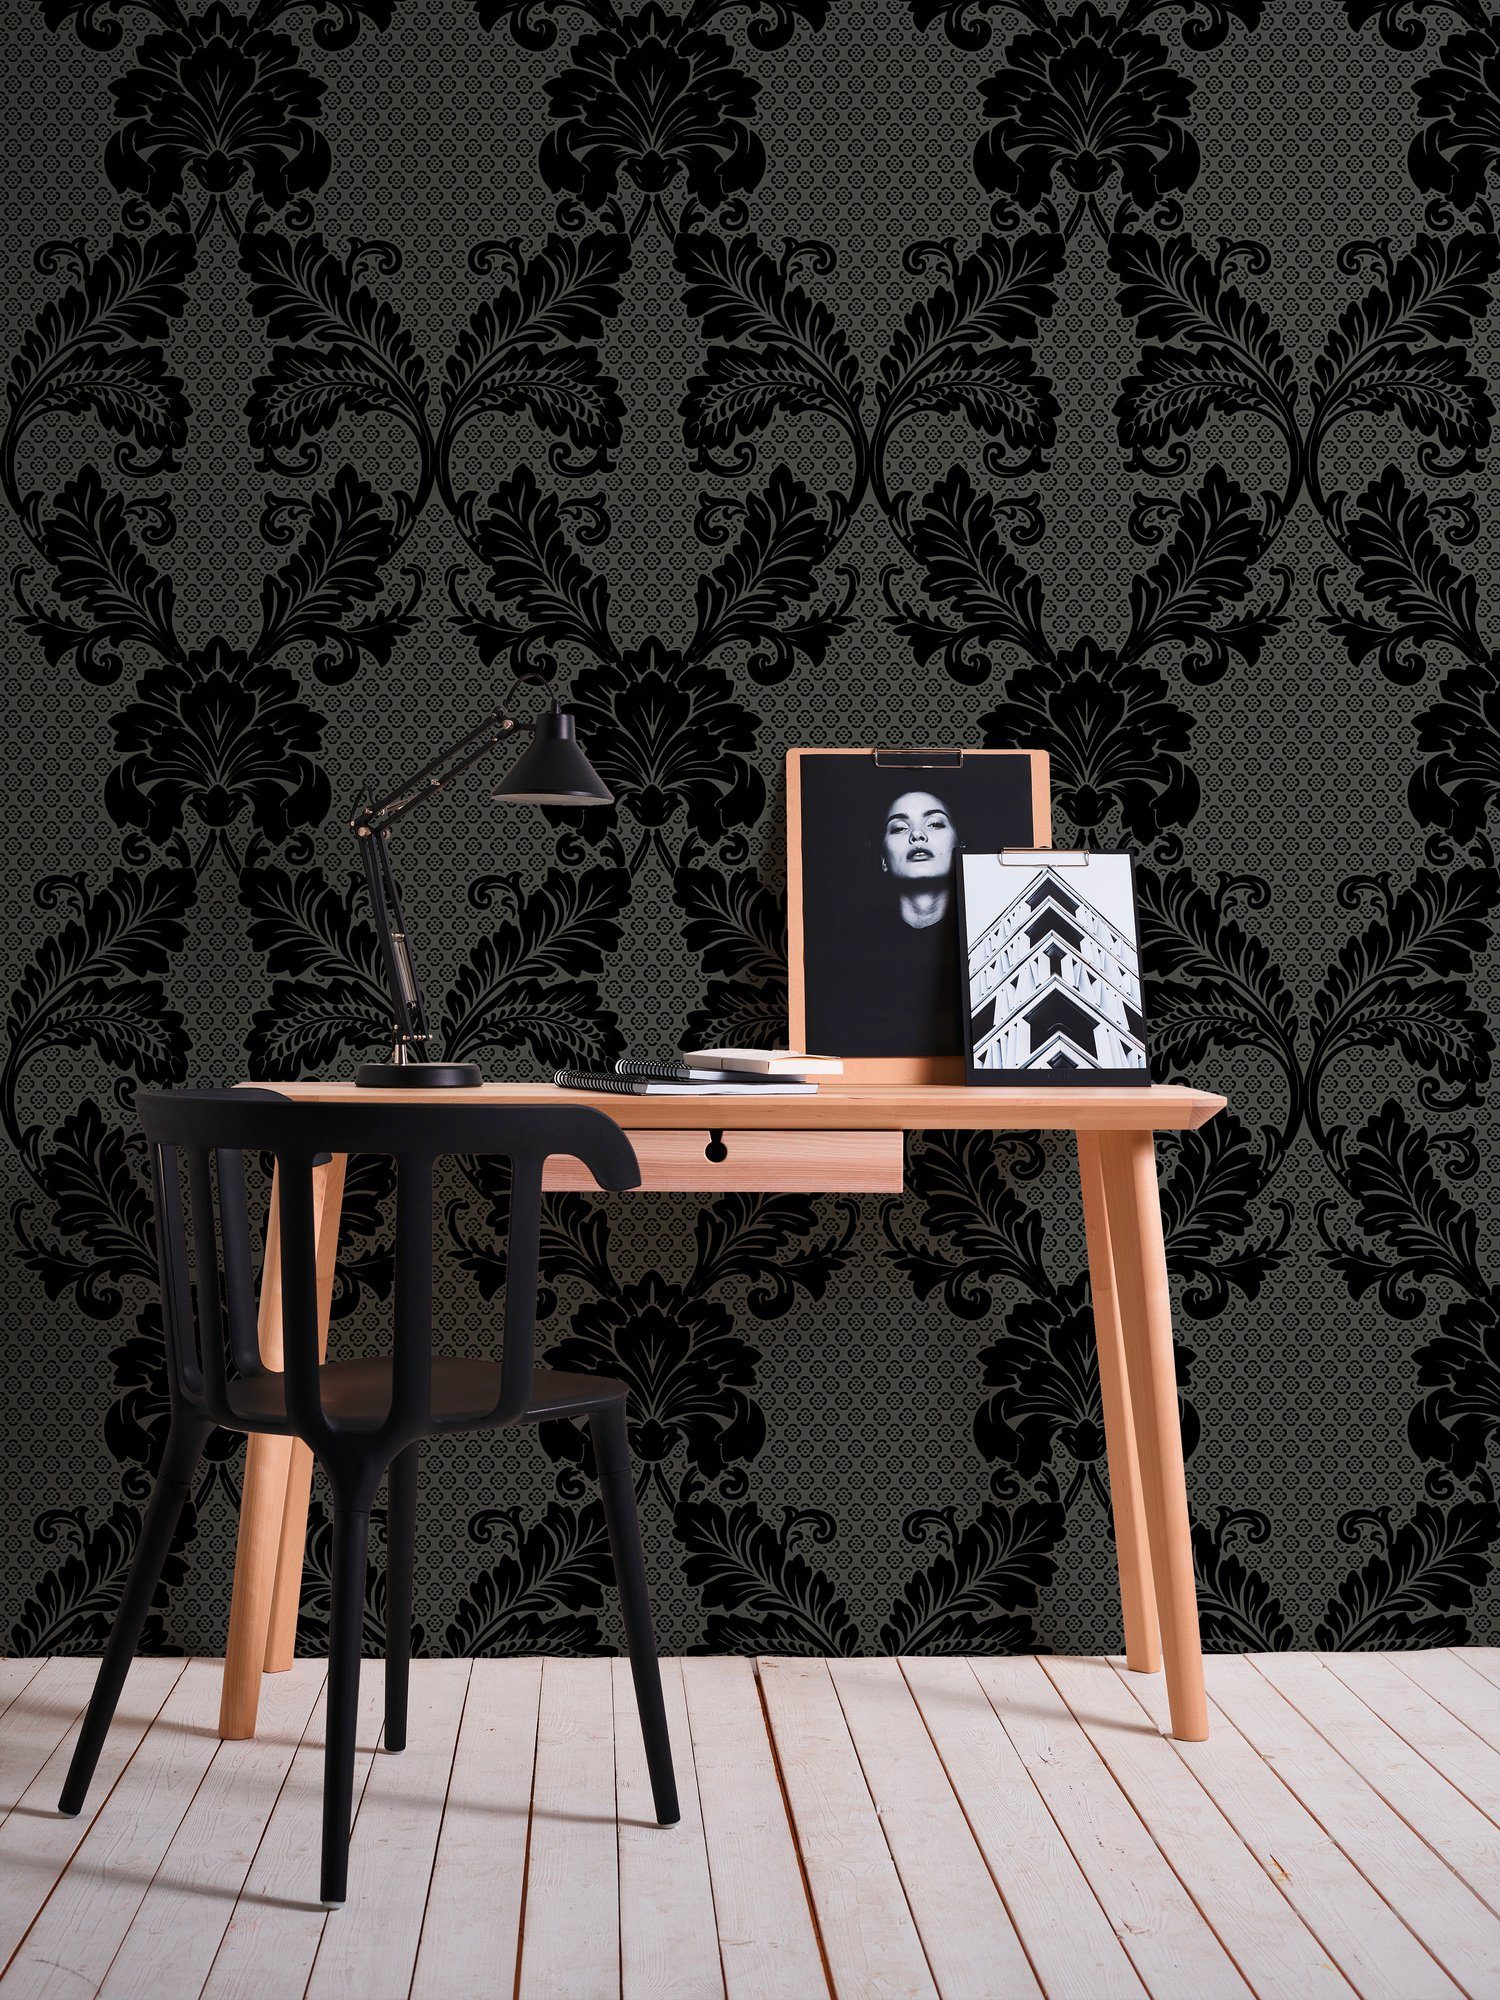 Architects Paper Vliestapete Luxury wallpaper, Tapete Barock, schwarz/grau beflockt, Barock Ornament